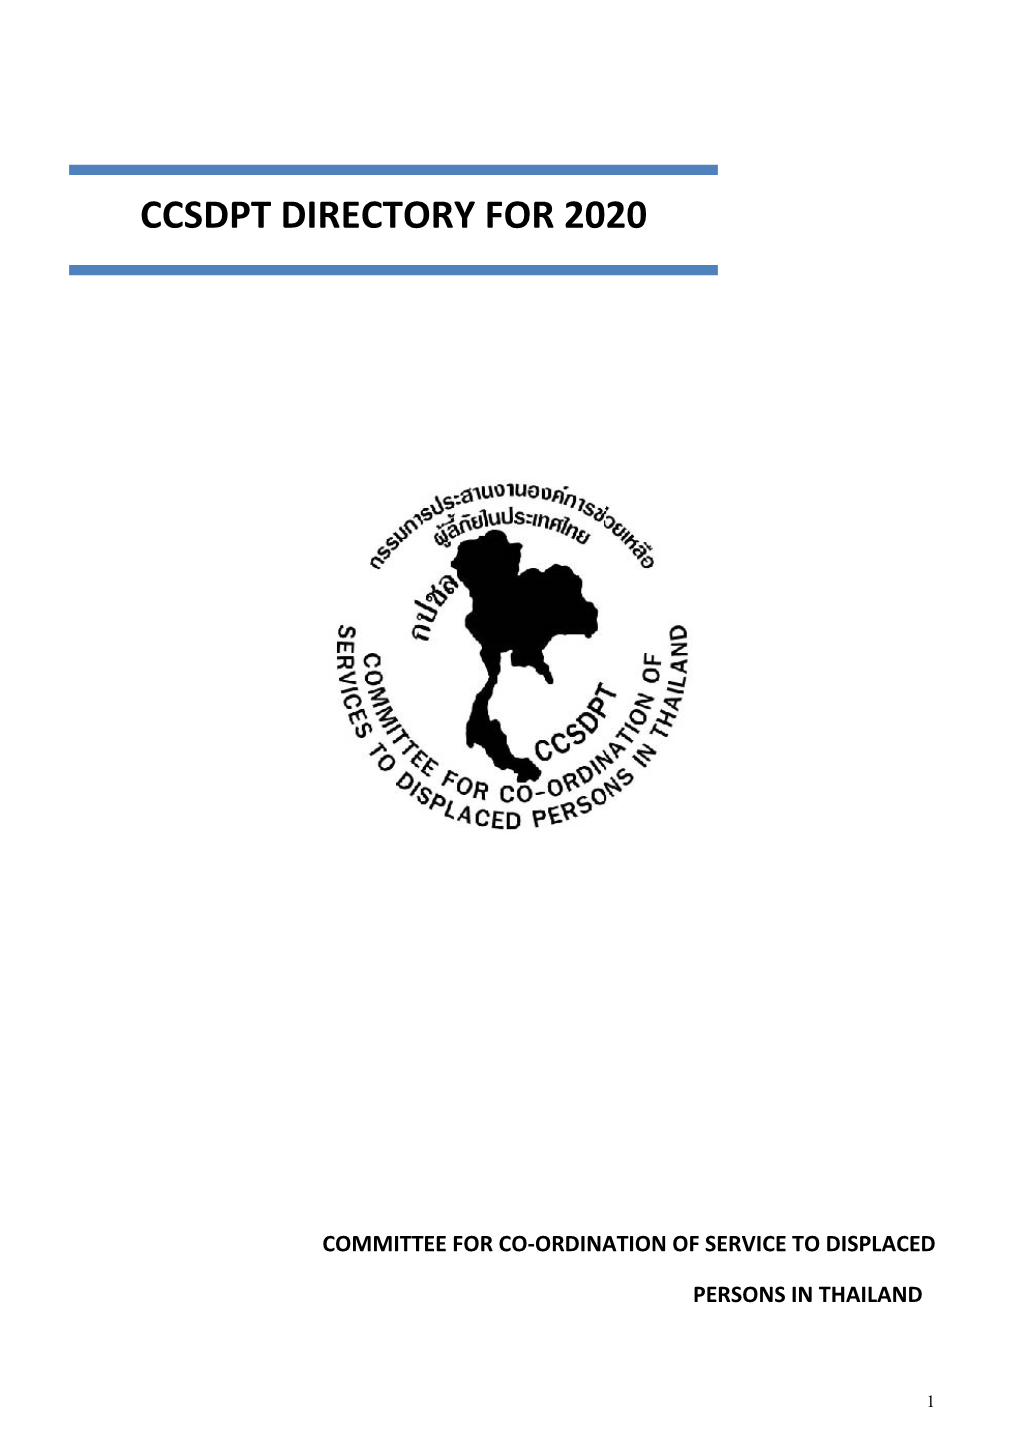 Ccsdpt Directory for 2020